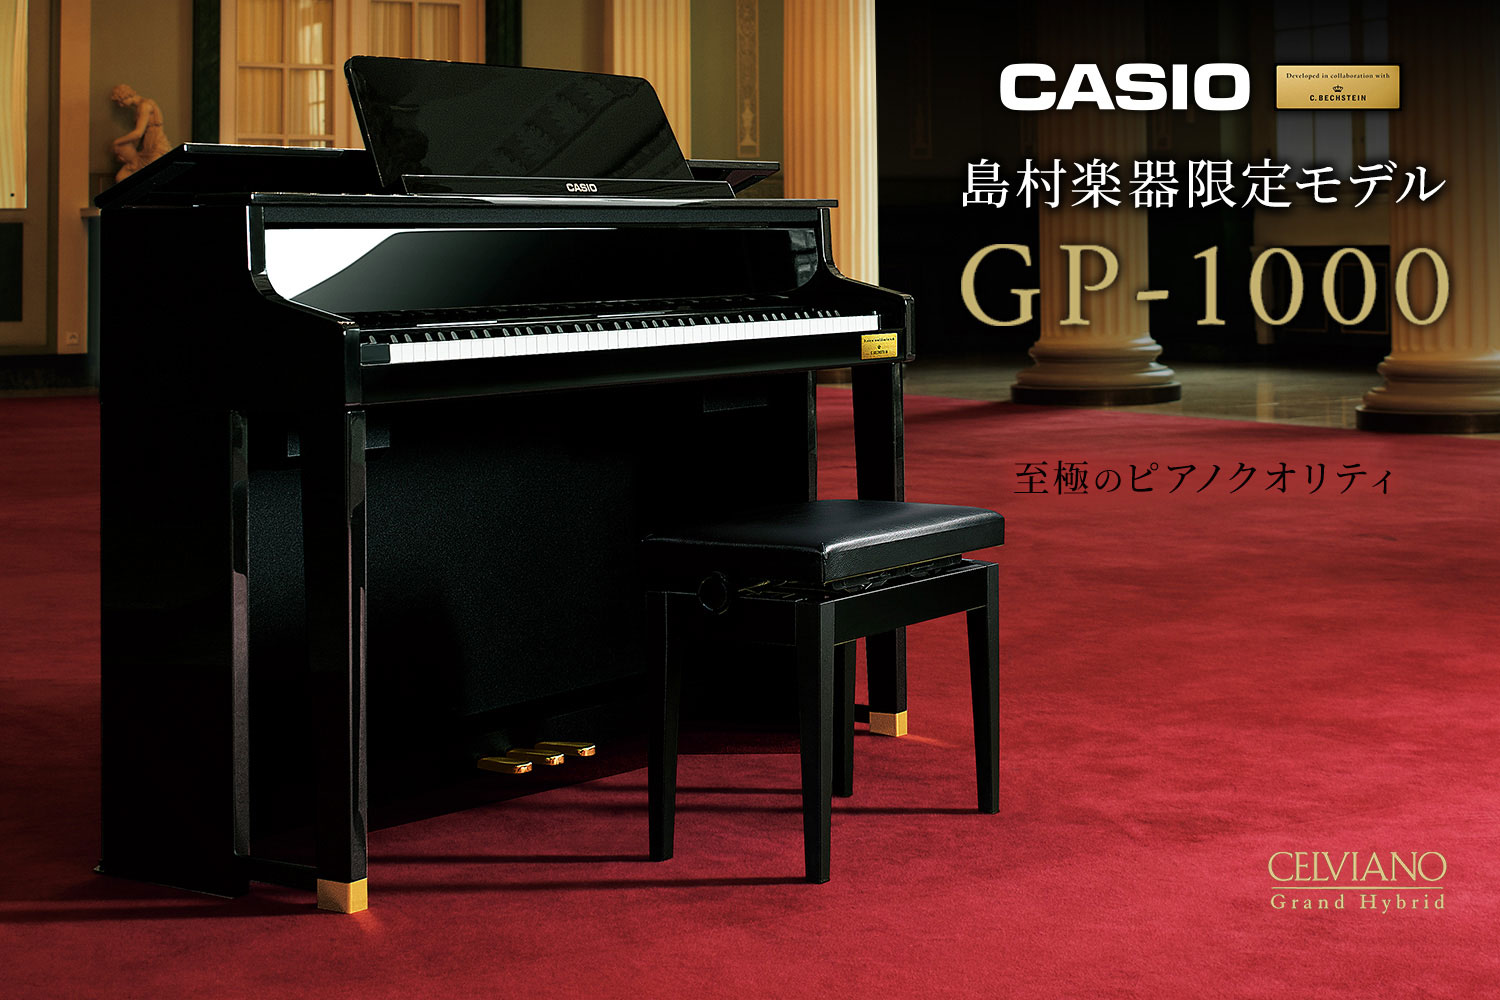 *CASIO　GP-1000 *グランドピアノに徹底的にこだわった至極のクオリティ ピアノ作りの伝統を徹底的に研究、そしてカシオの革新的なデジタル技術を投入した、カシオセルヴィアーノグランドハイブリッドシリーズ。世界有数の歴史あるピアノメーカーであるC.ベヒシュタイン社と共同開発した音や鍵盤を搭載し […]